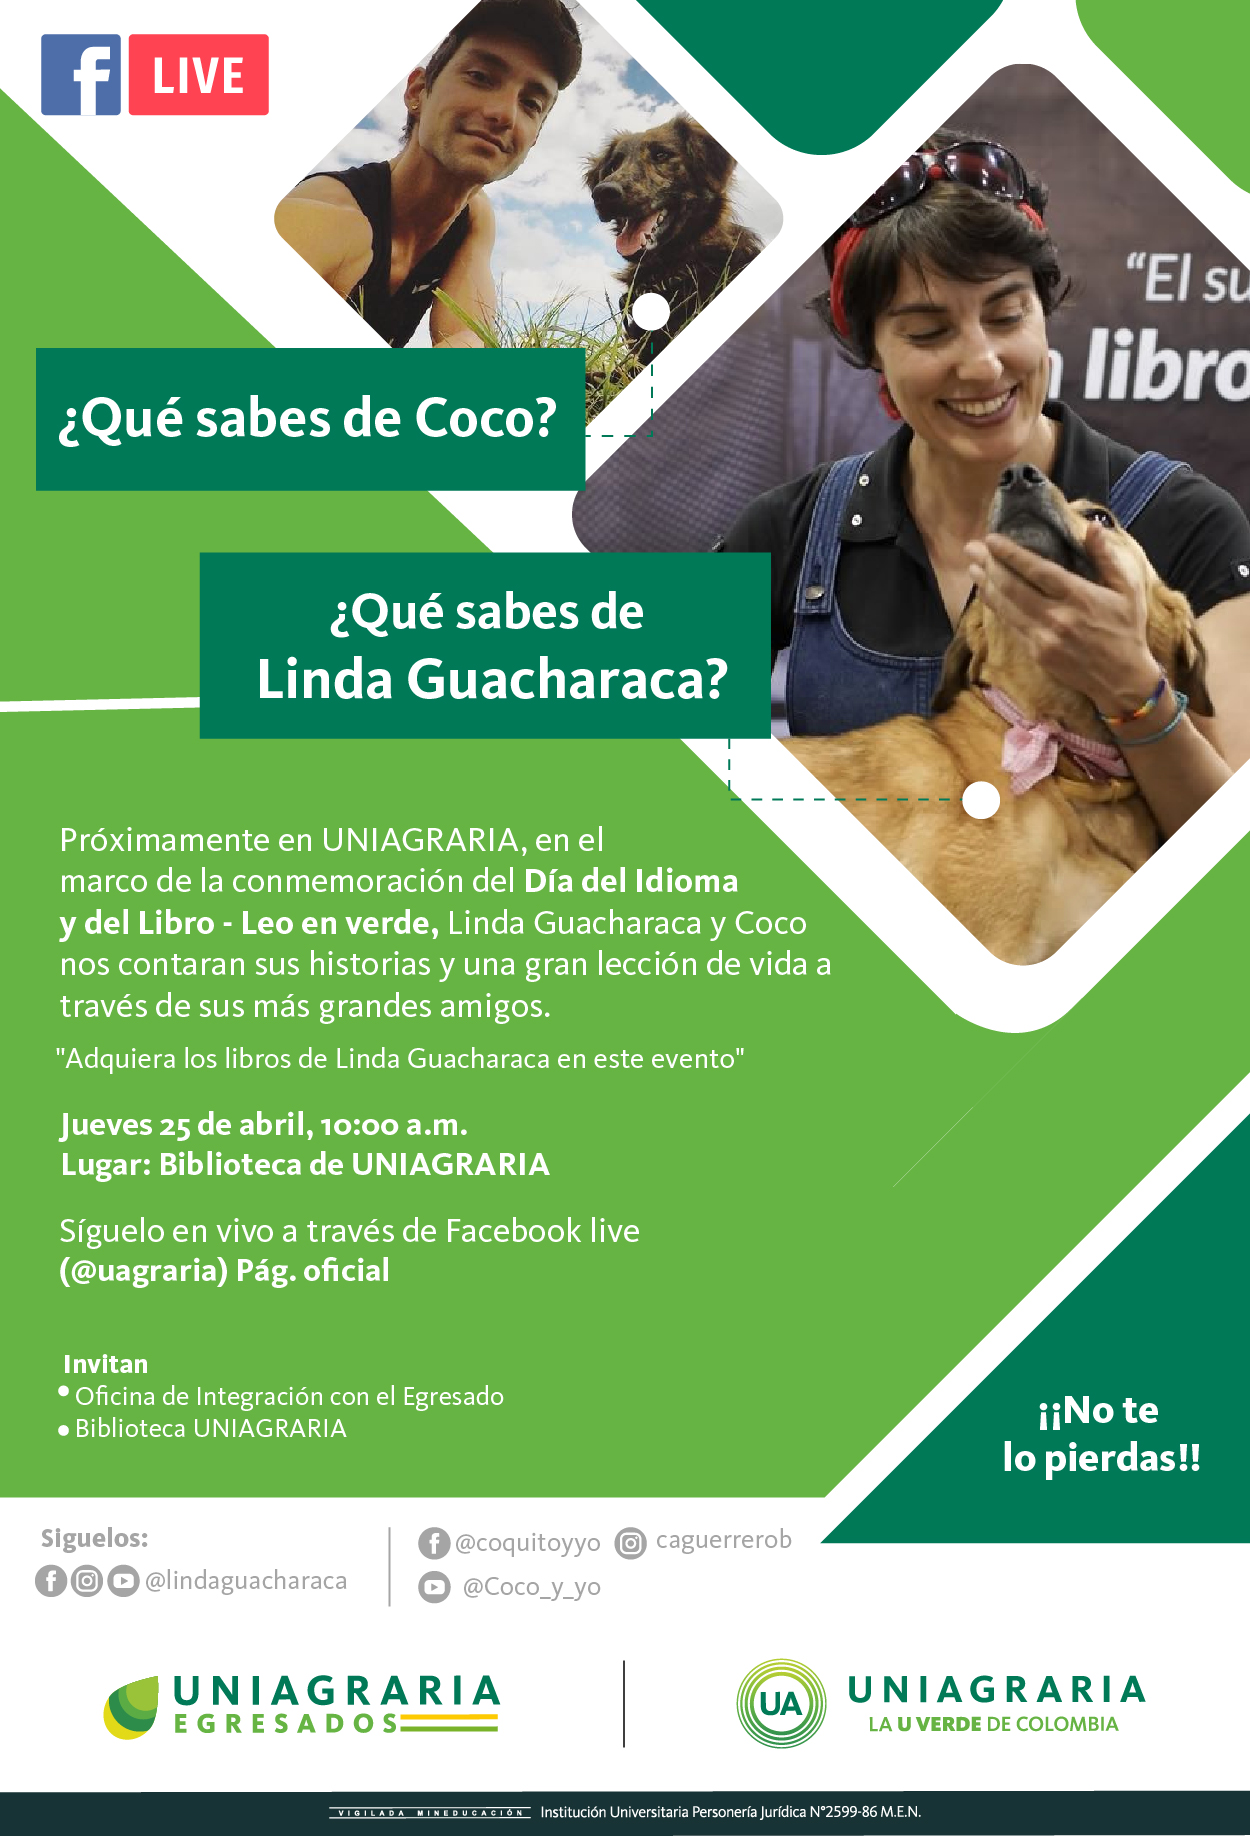 ¿Qué sabes de coco? ¿Qué sabes de Linda Guacharaca?